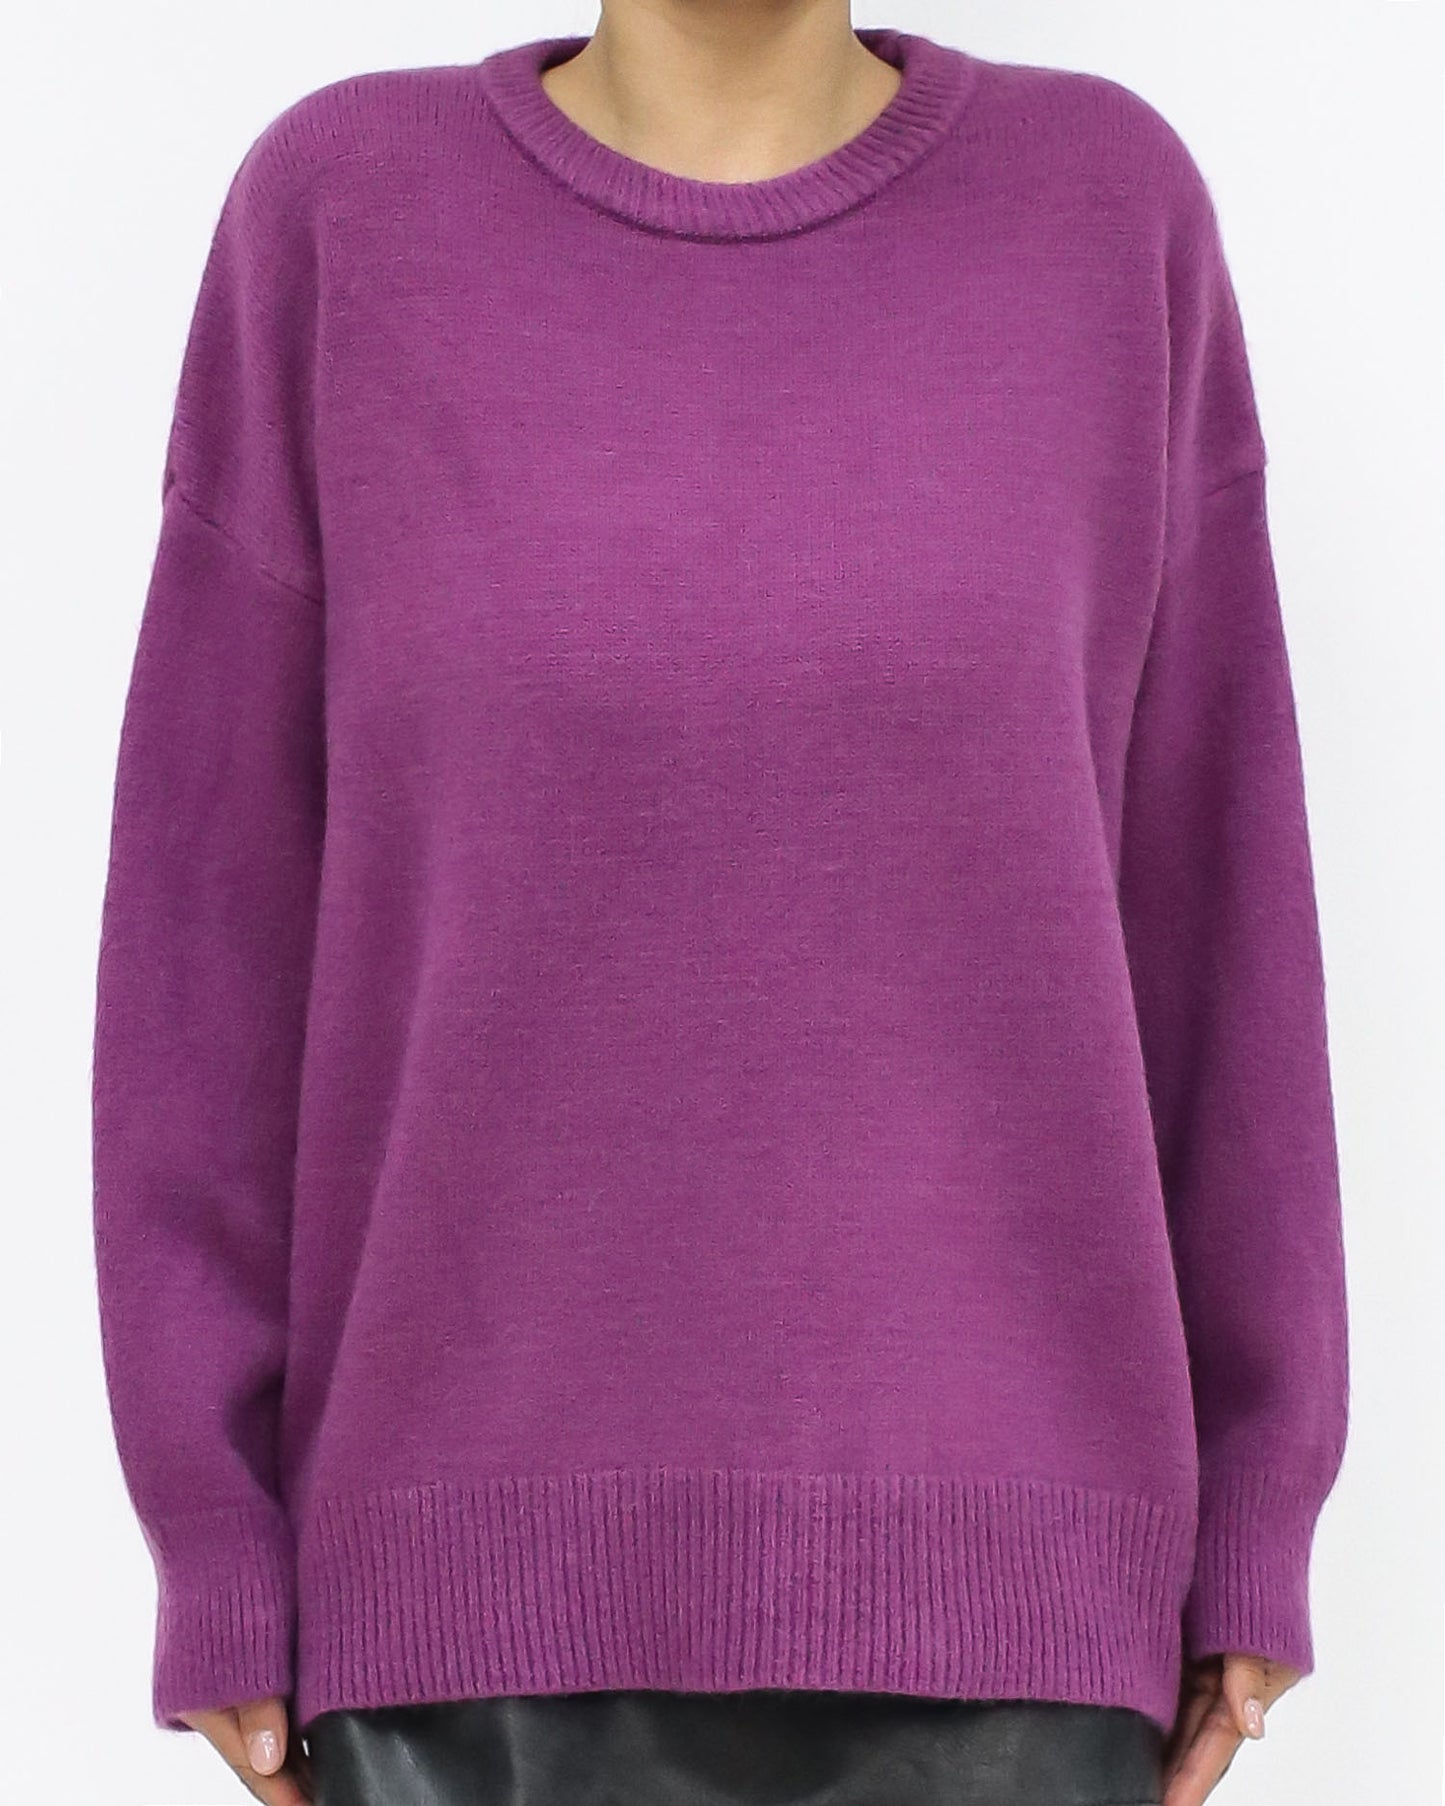 紫色基本款針織上衣